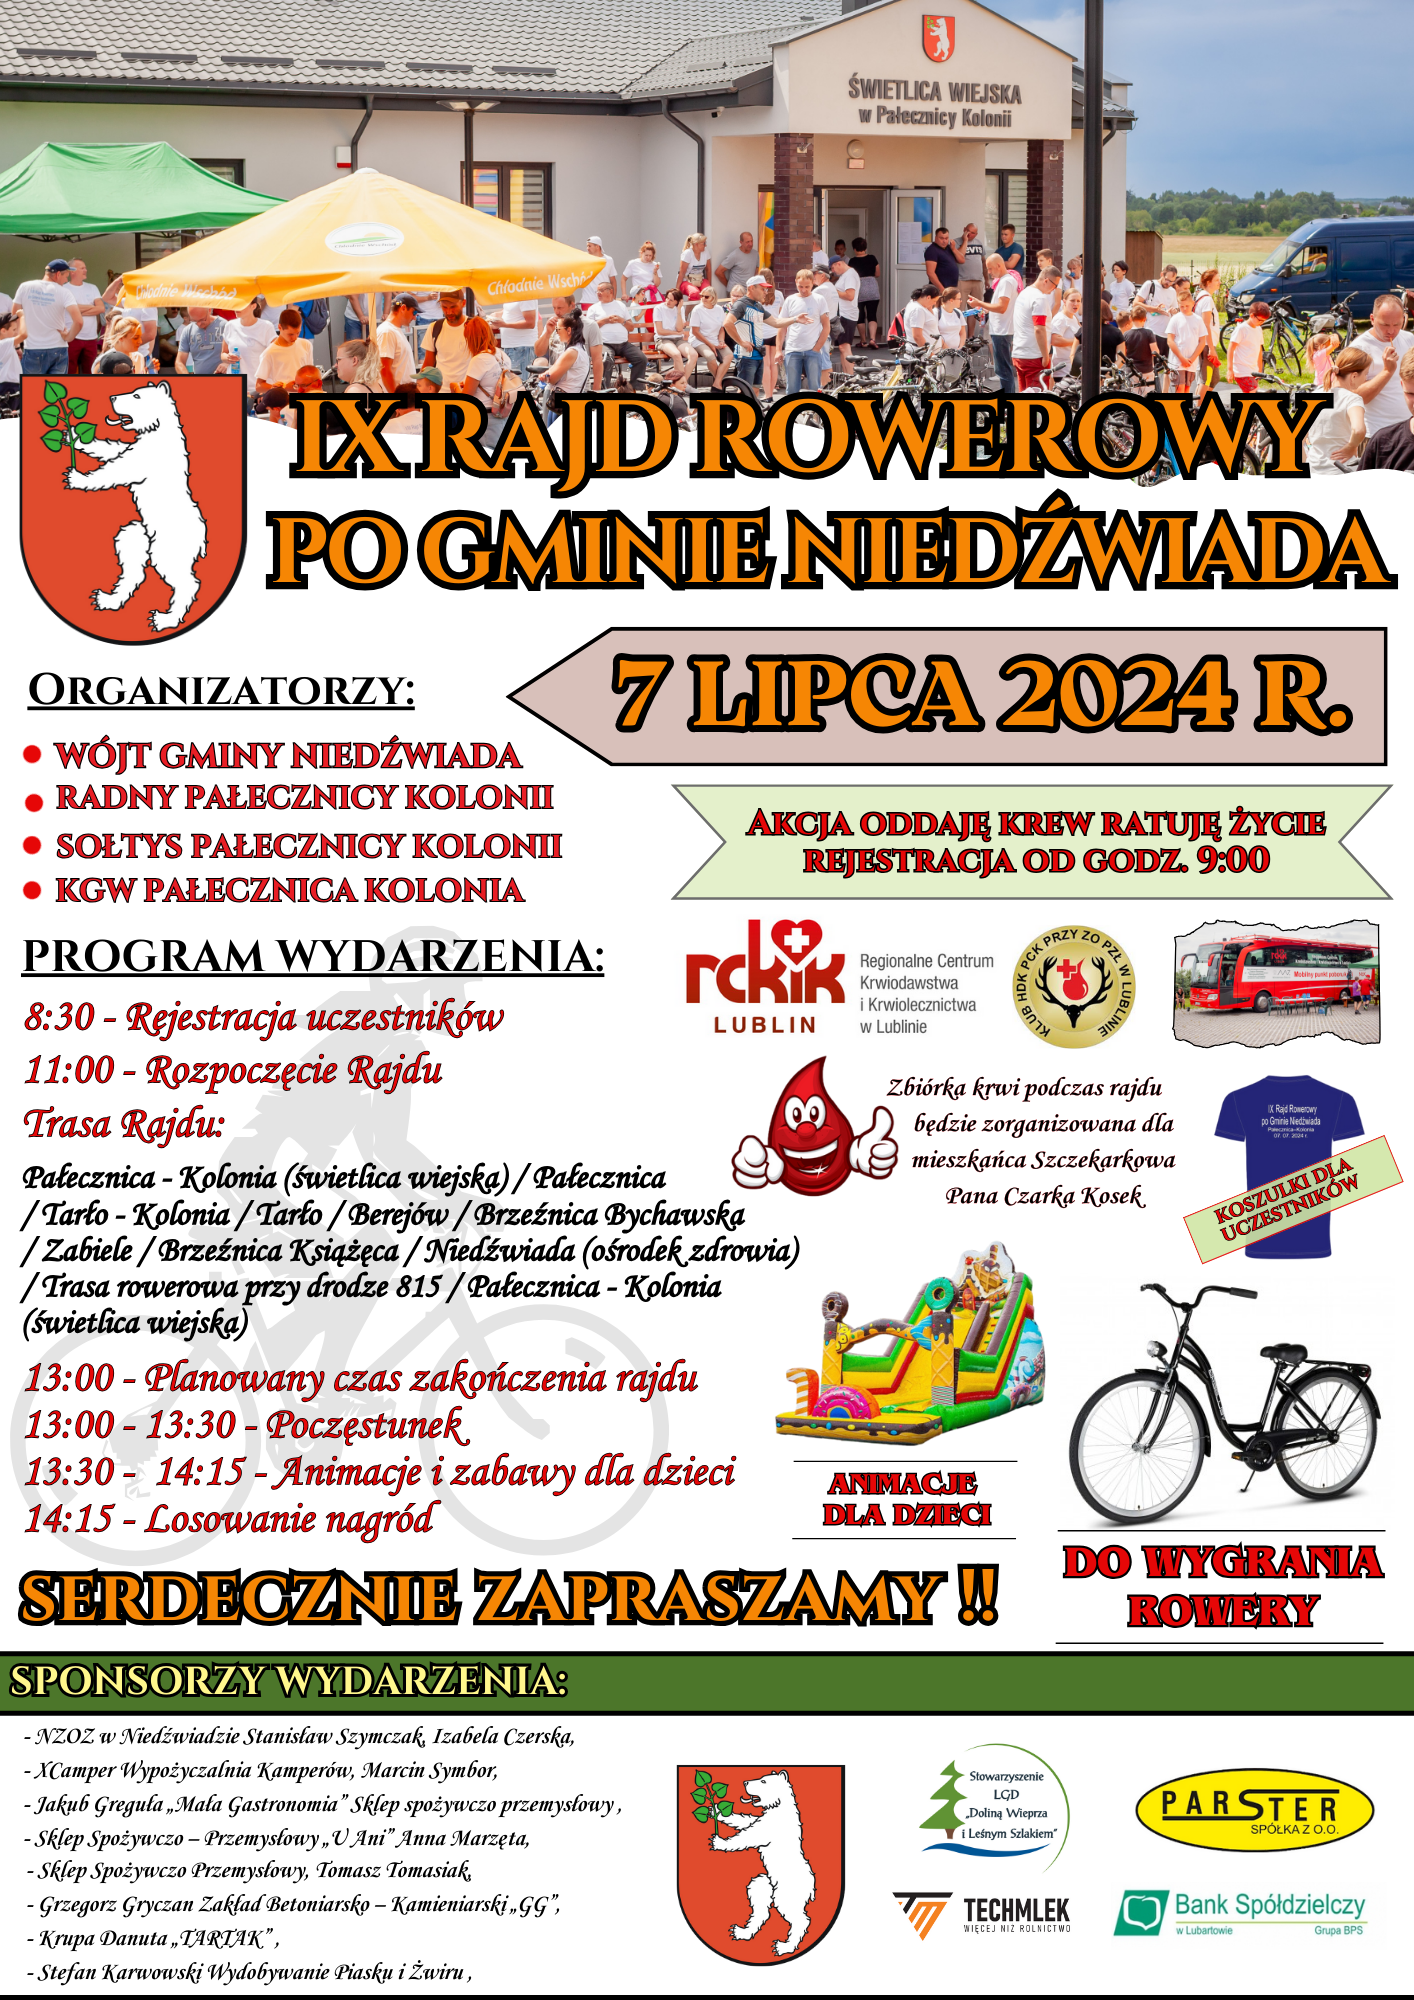 Zdjęcie przedstawia plakat wydarzenia "X Grynaid Po Gminie Rzędowiad" z datą 7 lipca 2024 roku. Są tu informacje o programie, sponsorach, grafiki rowerów, zawodów sportowych oraz loga sponsorów.